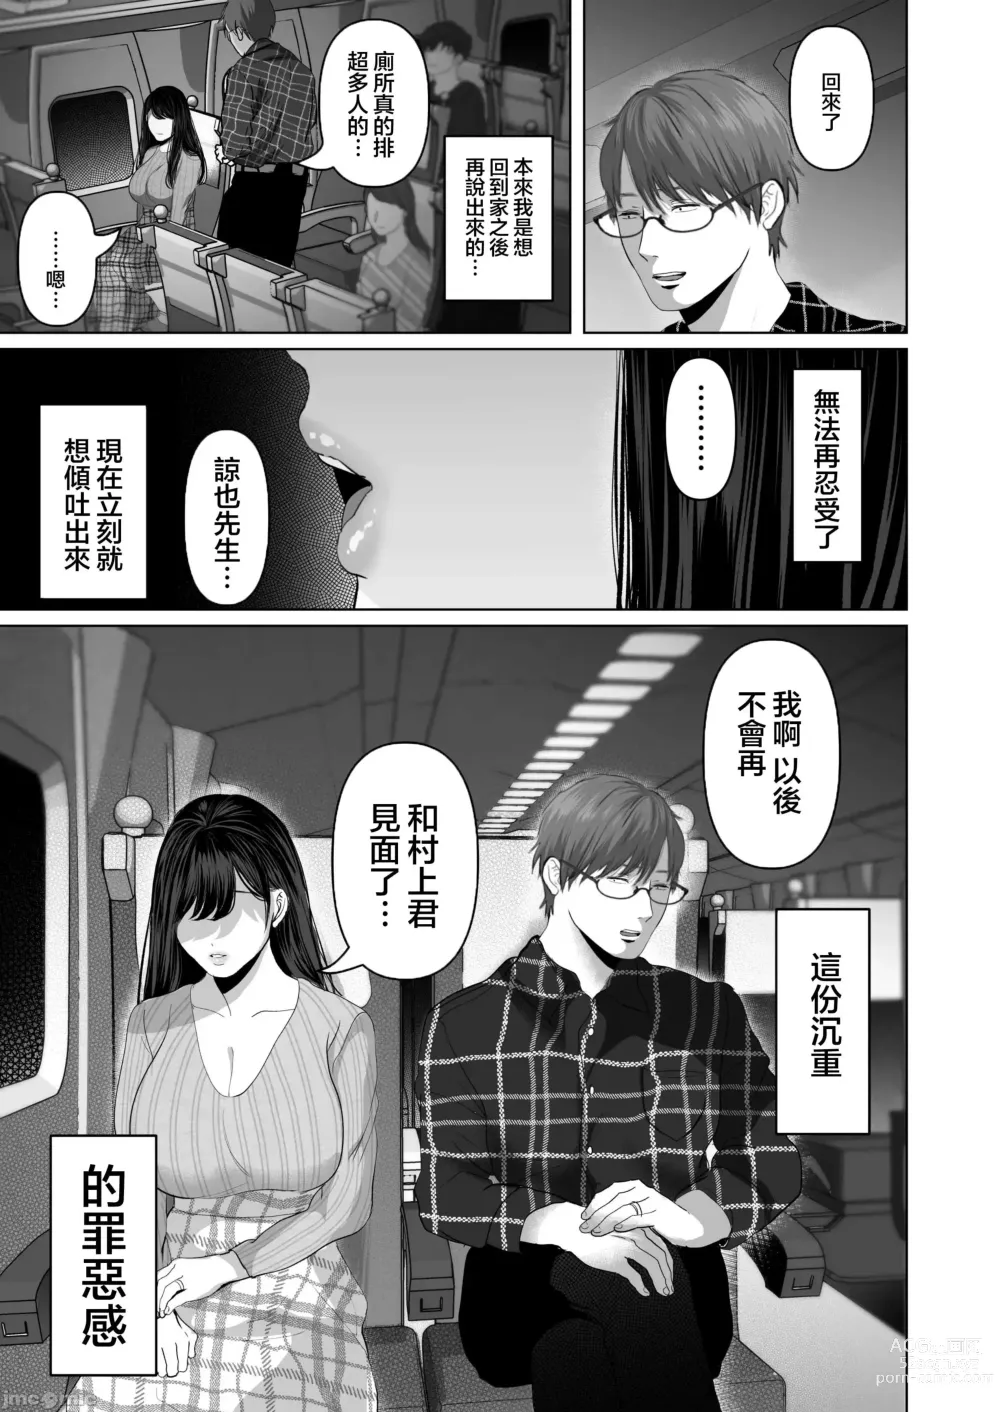 Page 561 of doujinshi Anata ga Nozomu nara 1-5